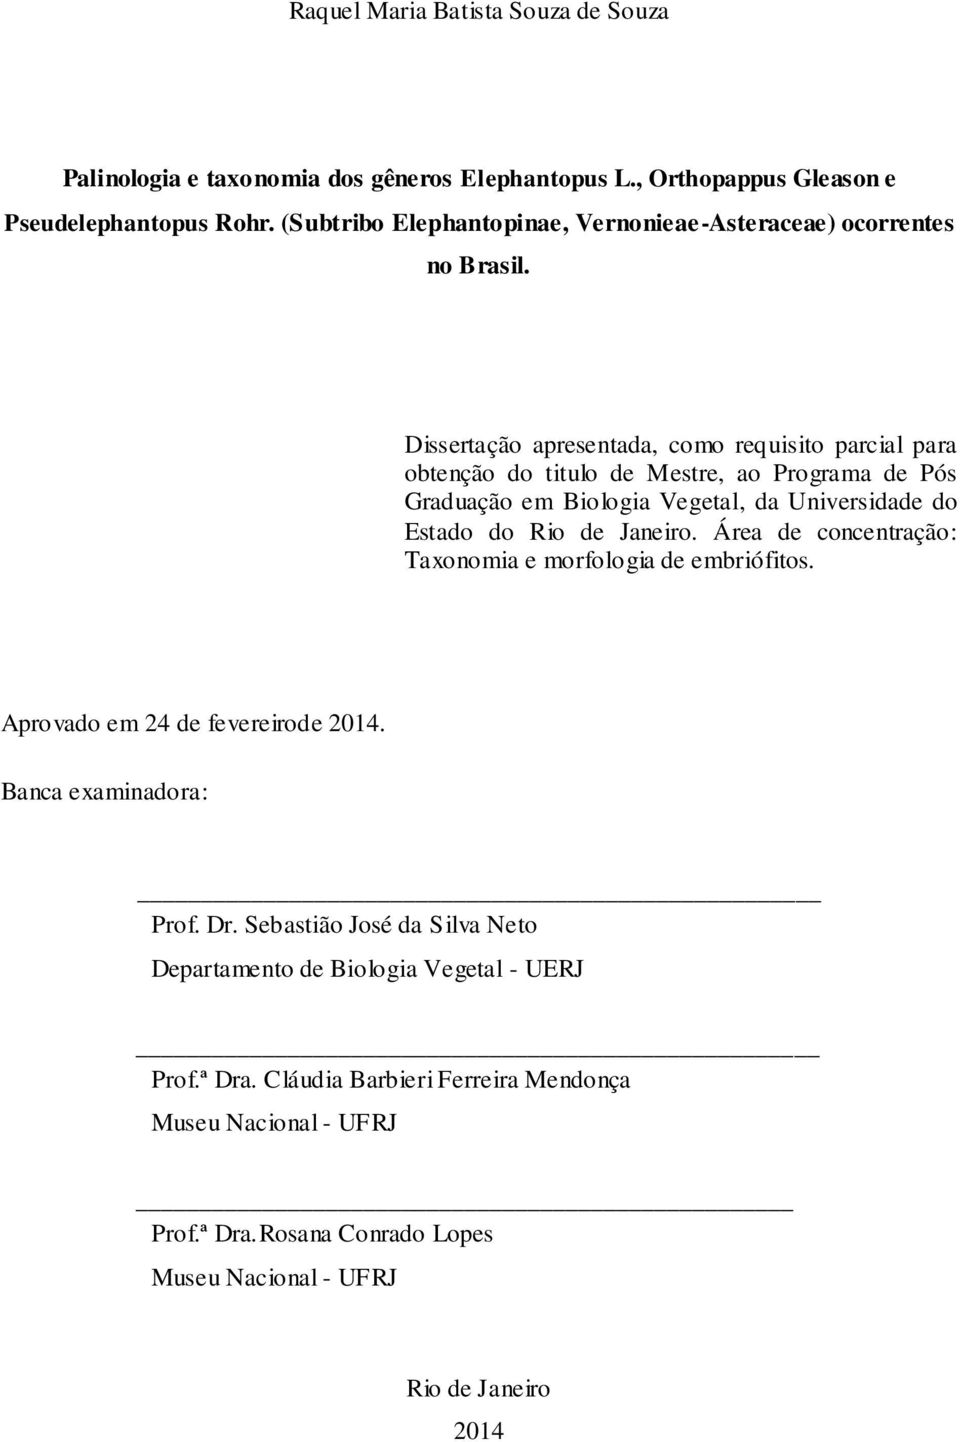 Dissertação apresentada, como requisito parcial para obtenção do titulo de Mestre, ao Programa de Pós Graduação em Biologia Vegetal, da Universidade do Estado do Rio de Janeiro.